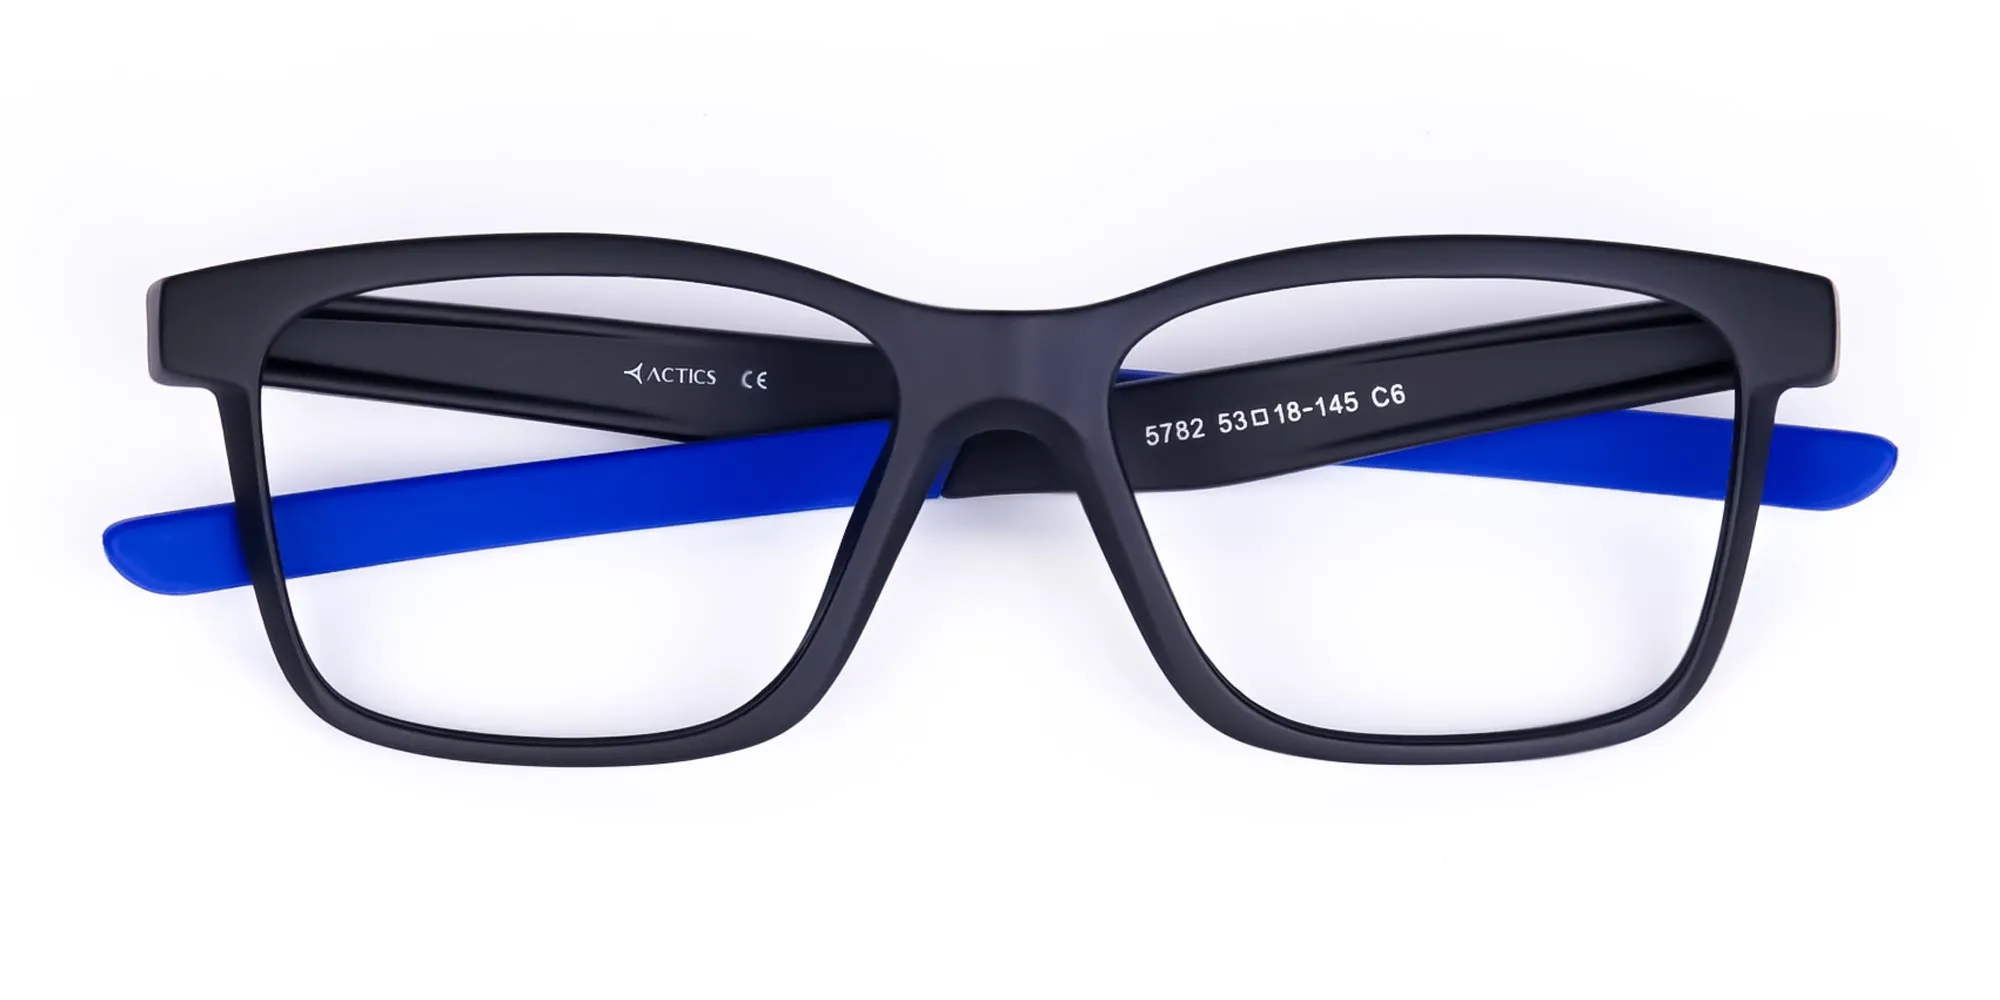 Blue & Black Running Glasses For Men -2